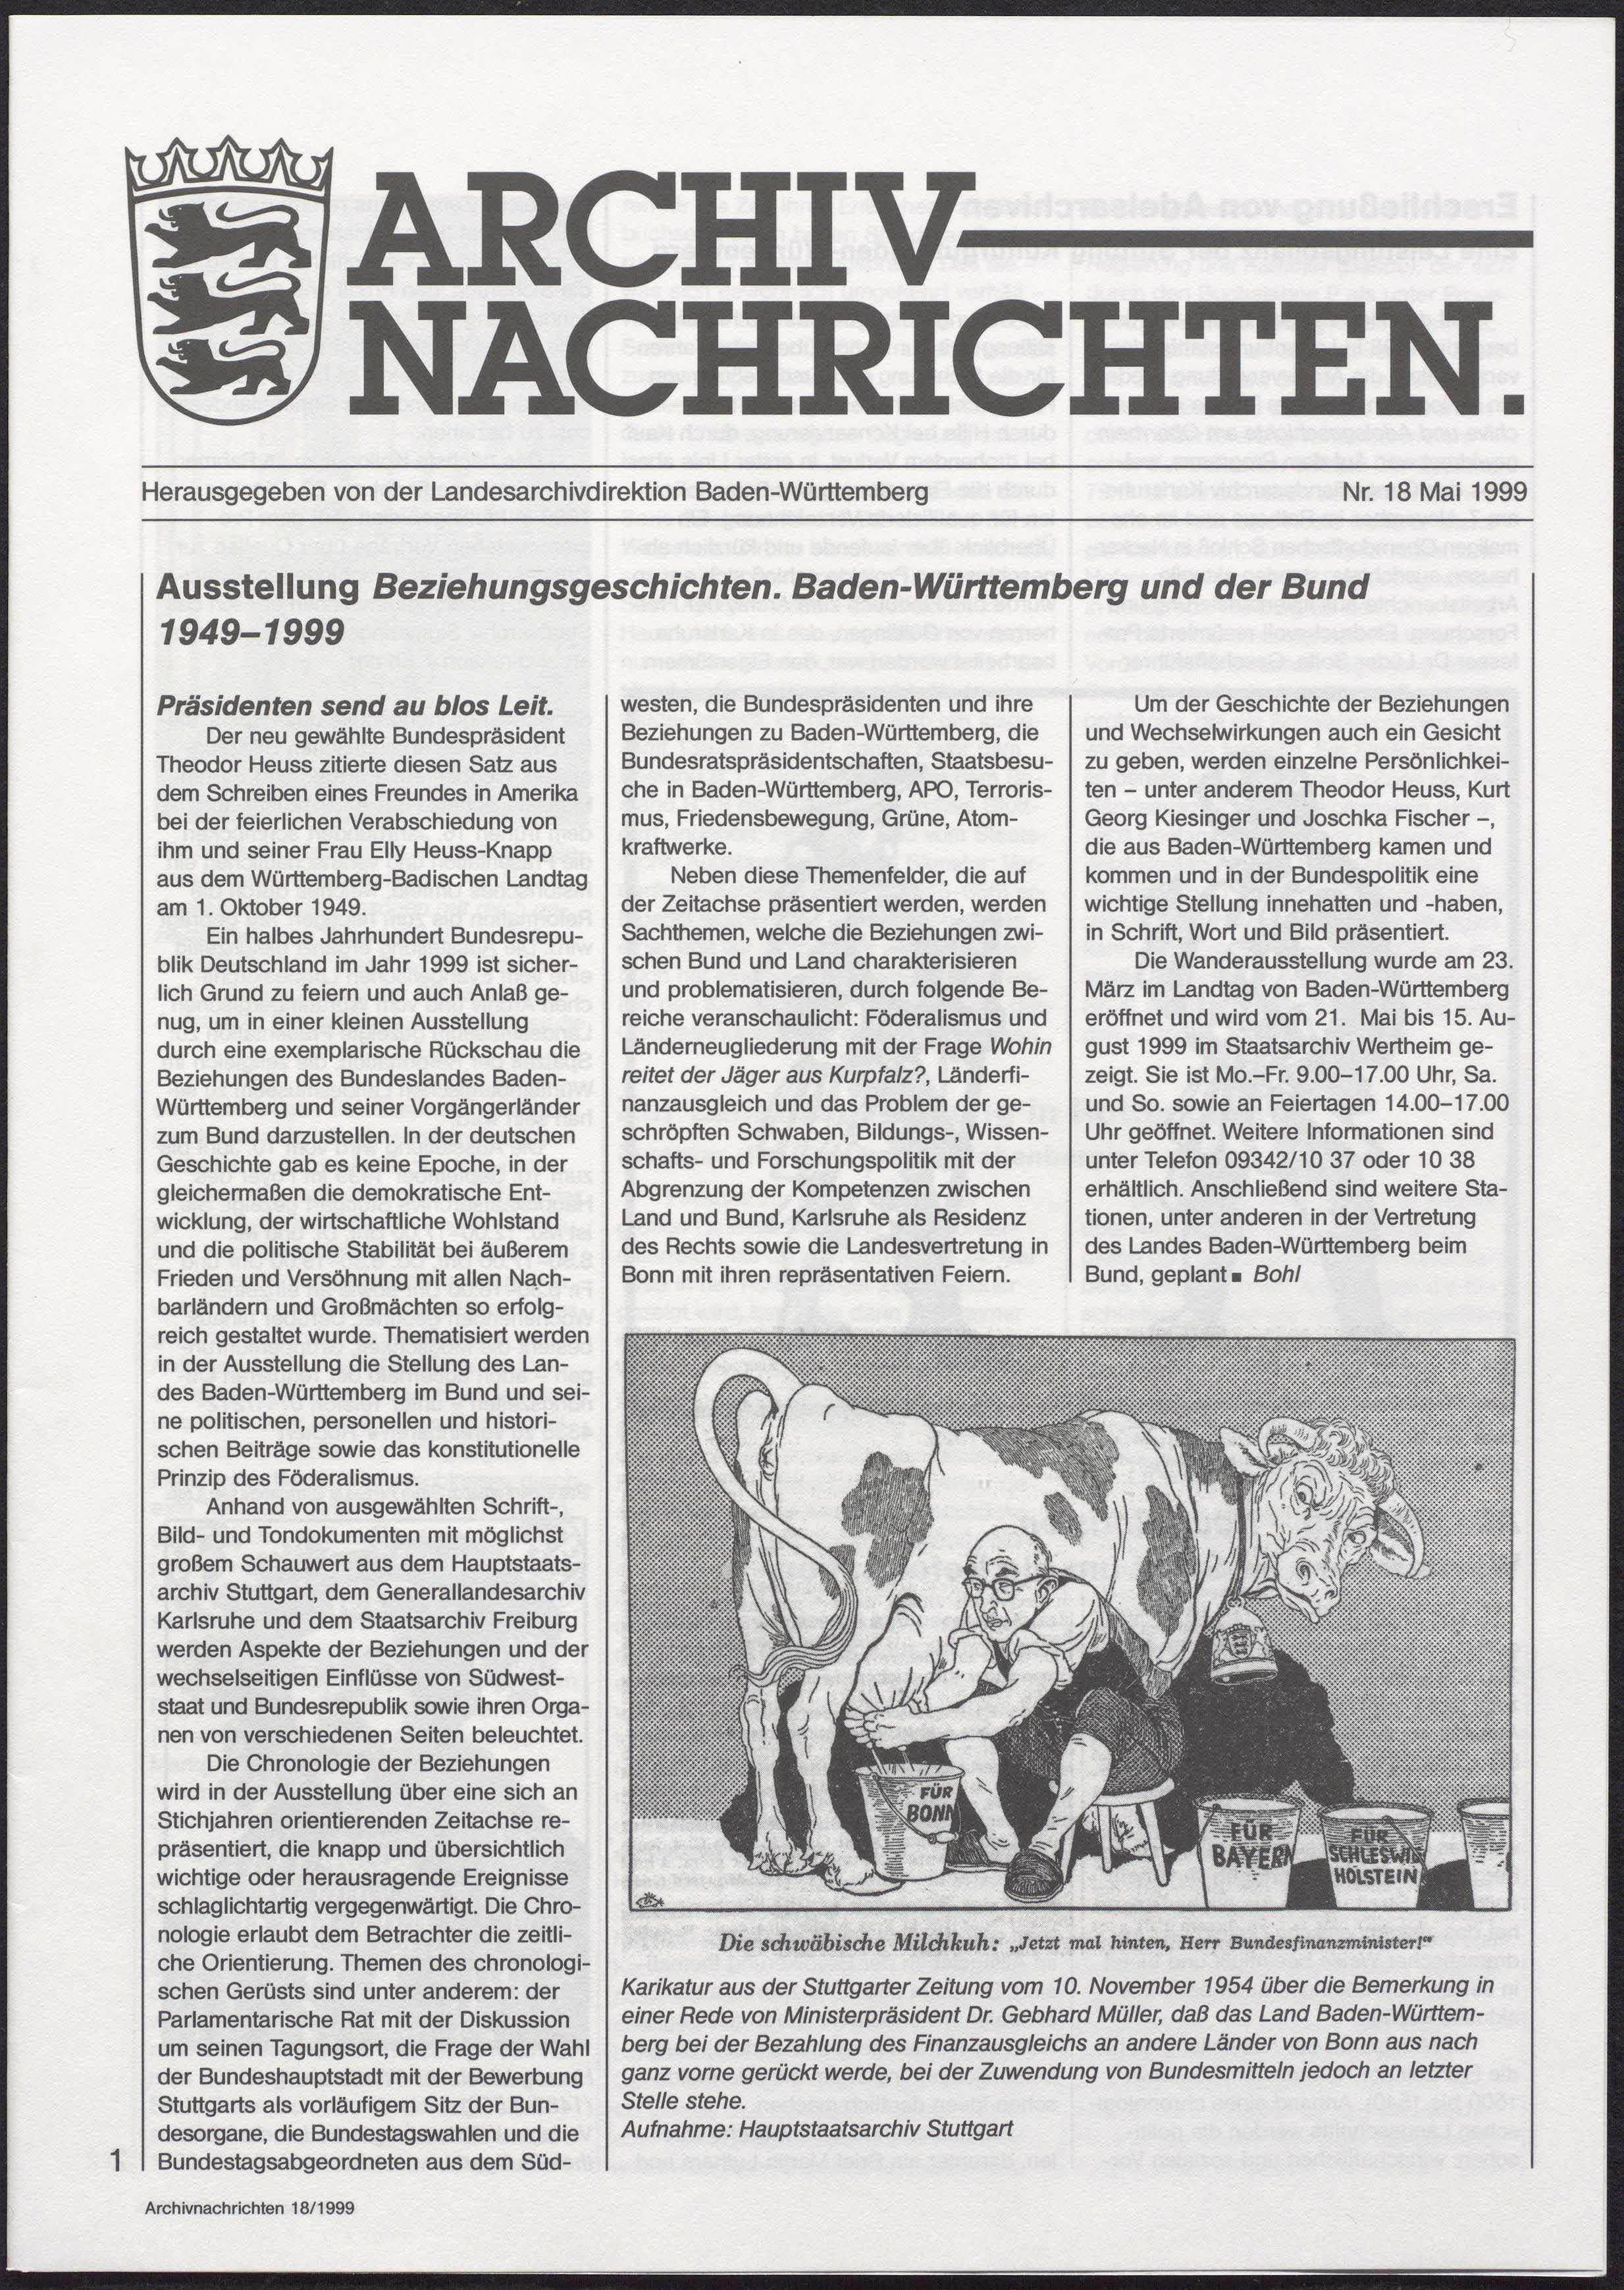                     Ansehen Nr. 18 (1999): Archivnachrichten
                